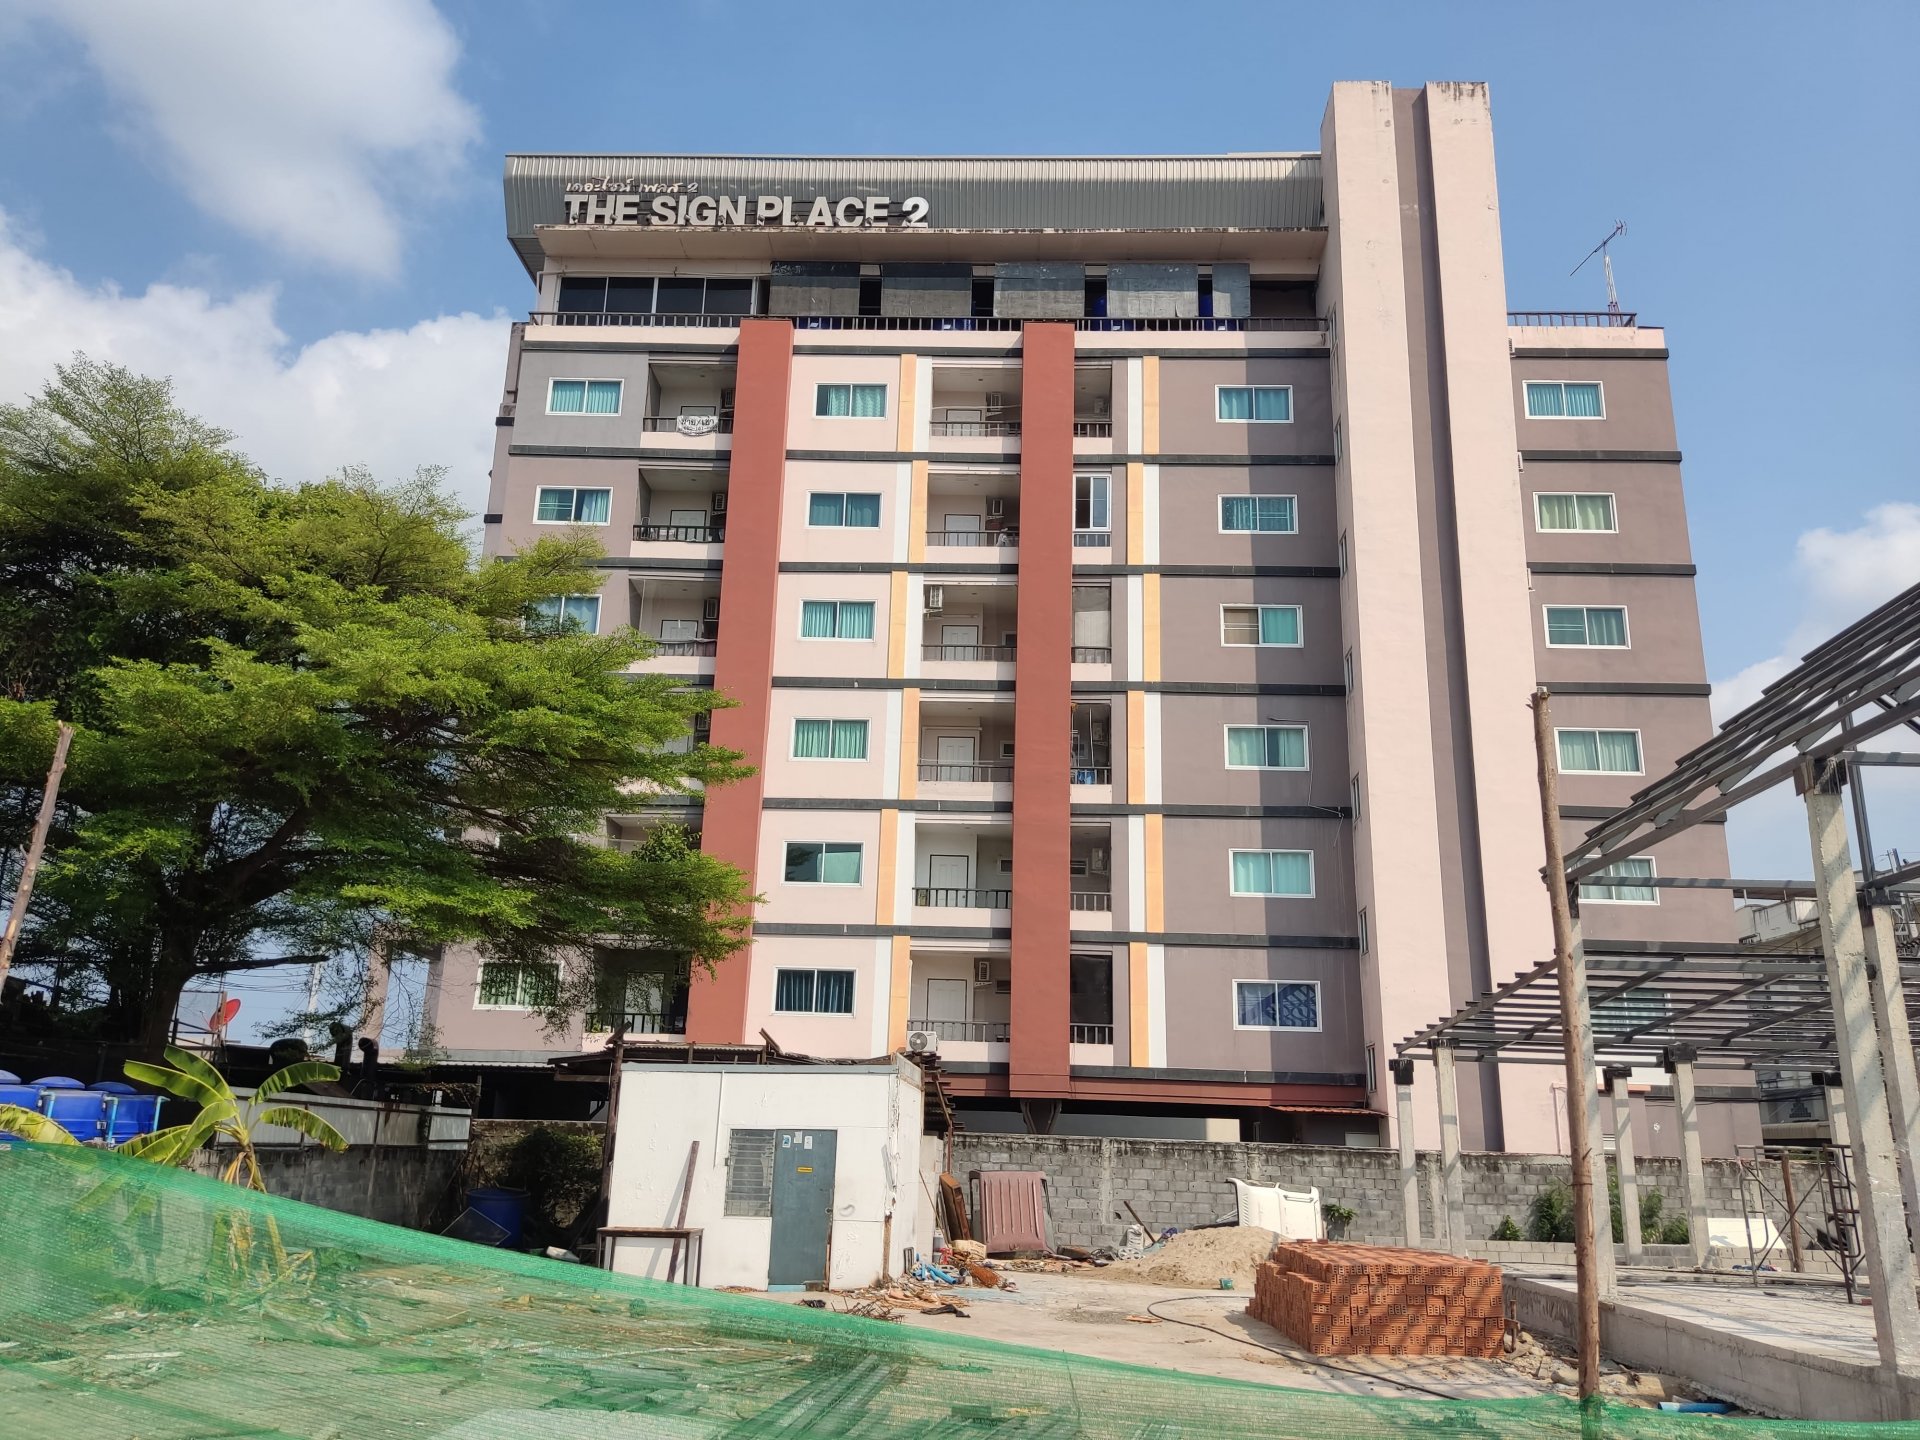 出售春武里 The Sign Place 2 公寓,  35.48 平方米. 2 楼边角房,  近 Chon Chai学校, Aikchol 医院